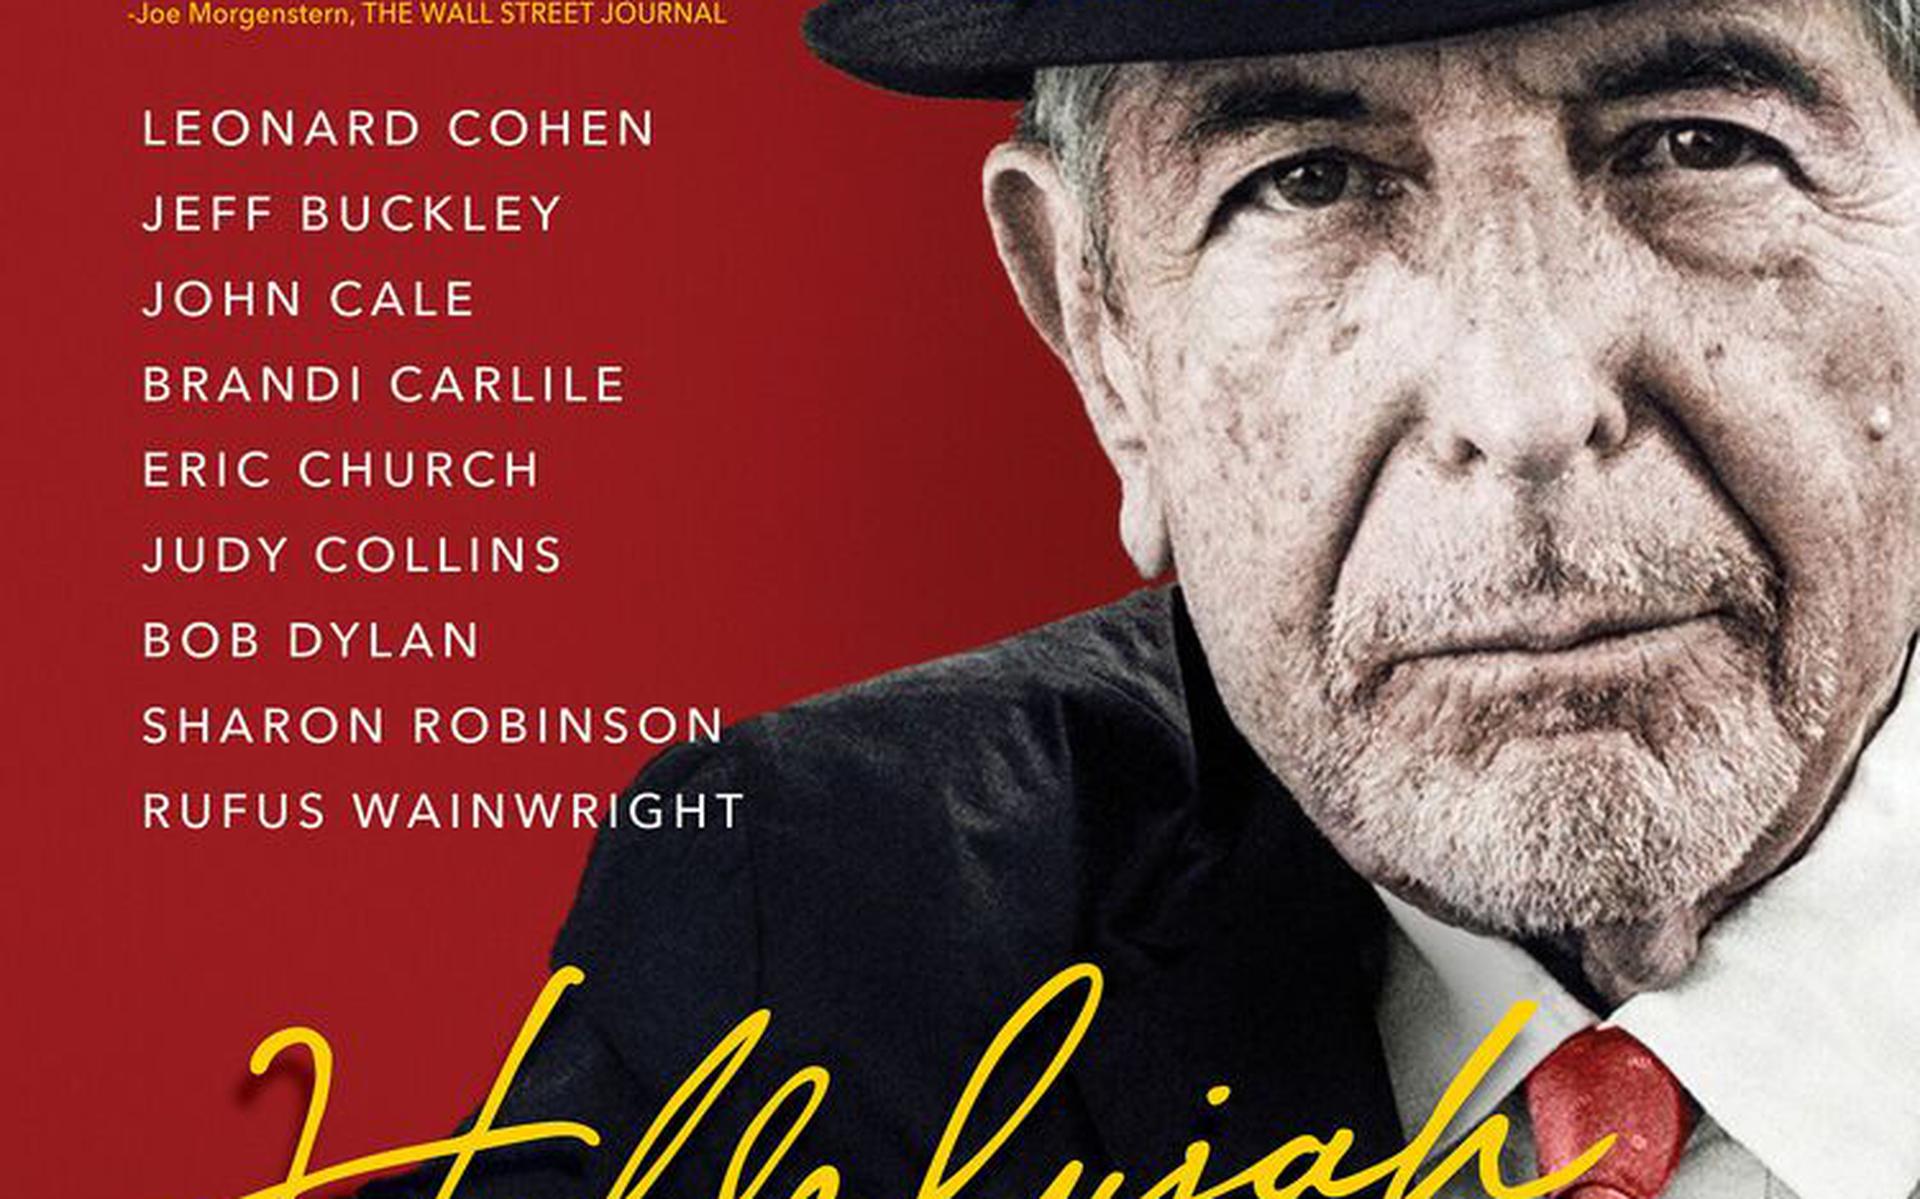 De docu over Leonard Cohen is woensdagavond 3 mei te zien. 